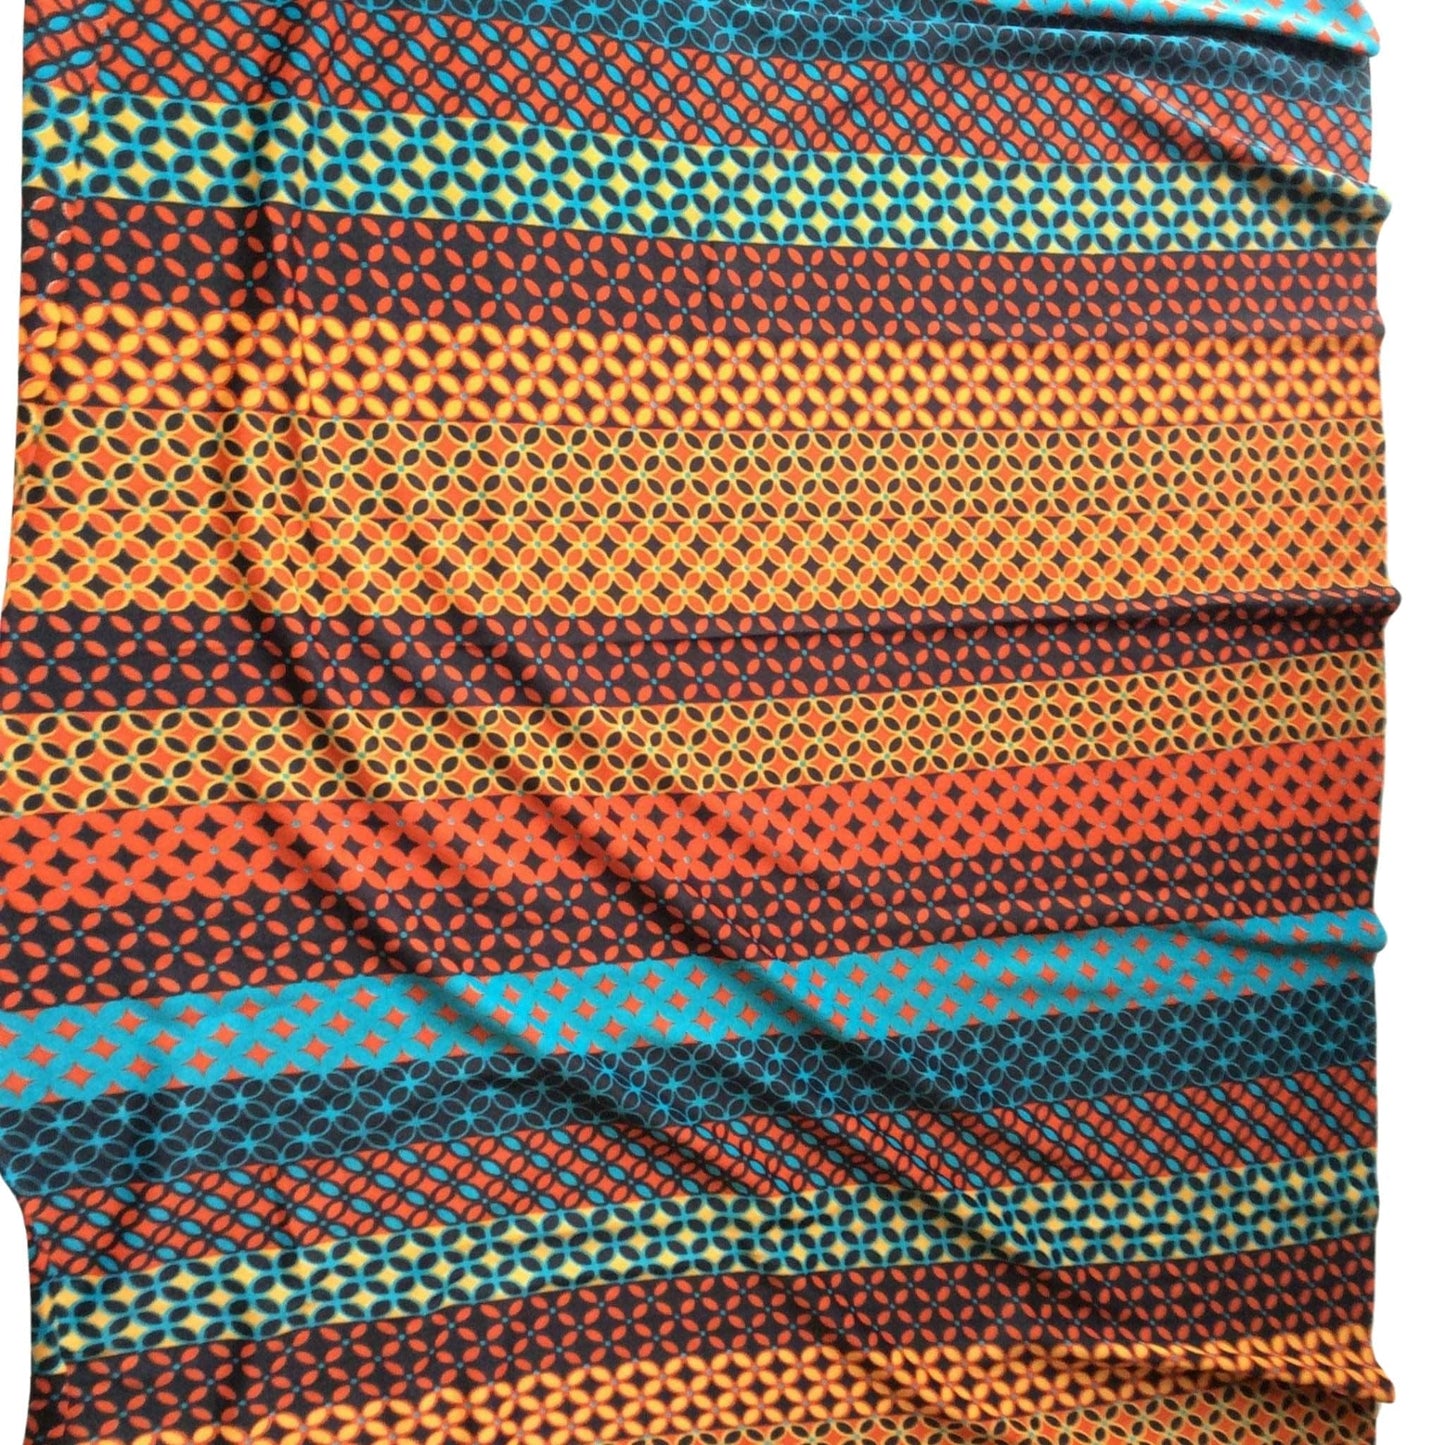 Vintage Geometric Fabric Multi / Polyester / Vintage 1970s